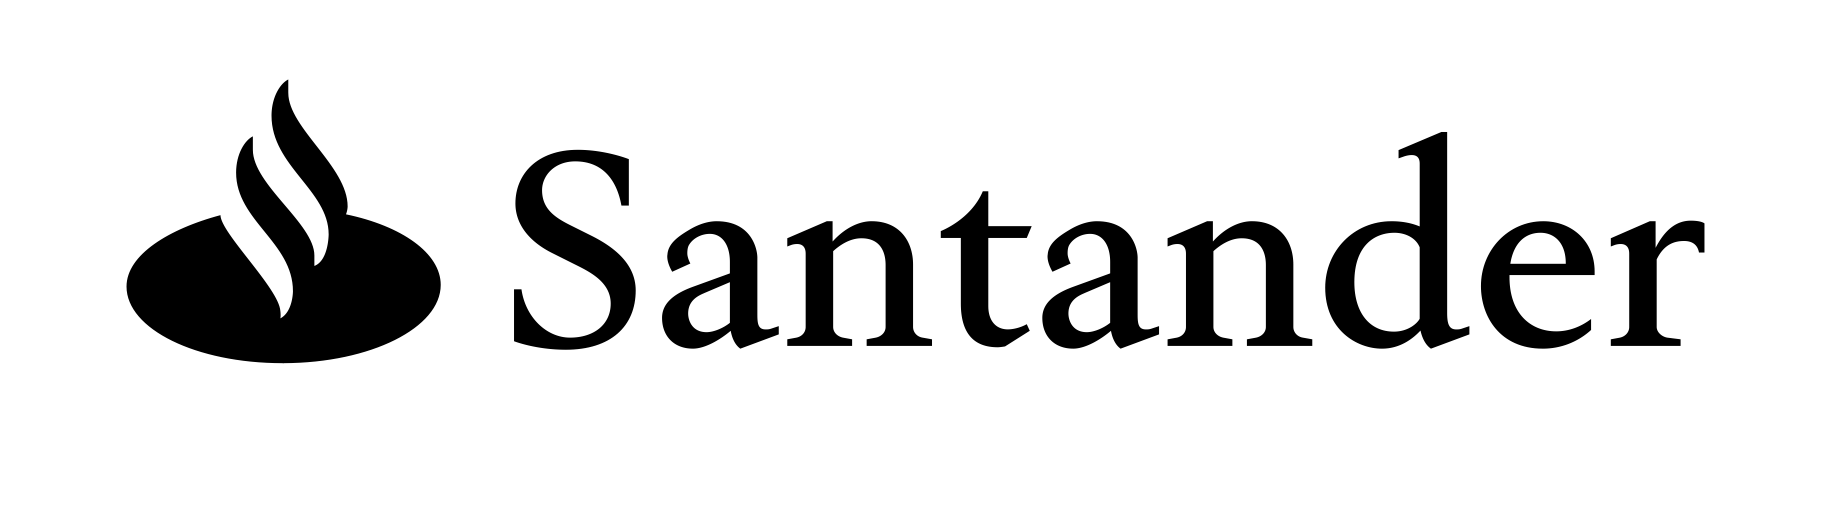 Santander Logo PNG Clipart Background